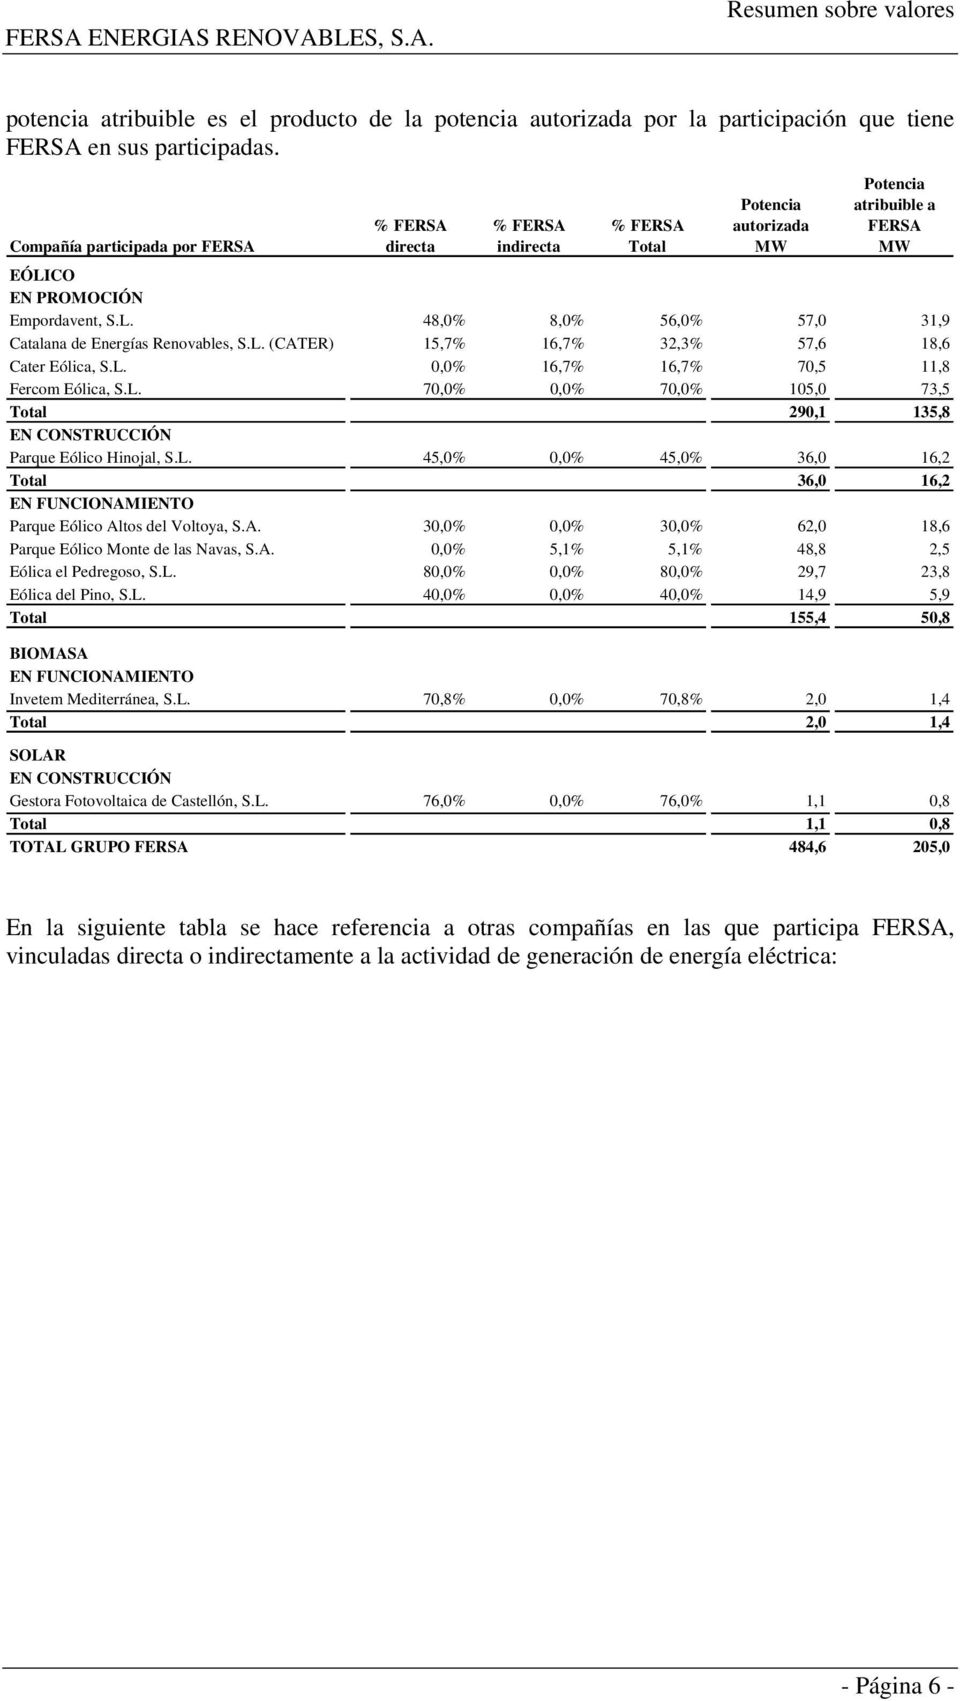 L. (CATER) 15,7% 16,7% 32,3% 57,6 18,6 Cater Eólica, S.L. 0,0% 16,7% 16,7% 70,5 11,8 Fercom Eólica, S.L. 70,0% 0,0% 70,0% 105,0 73,5 Total 290,1 135,8 EN CONSTRUCCIÓN Parque Eólico Hinojal, S.L. 45,0% 0,0% 45,0% 36,0 16,2 Total 36,0 16,2 EN FUNCIONAMIENTO Parque Eólico Altos del Voltoya, S.